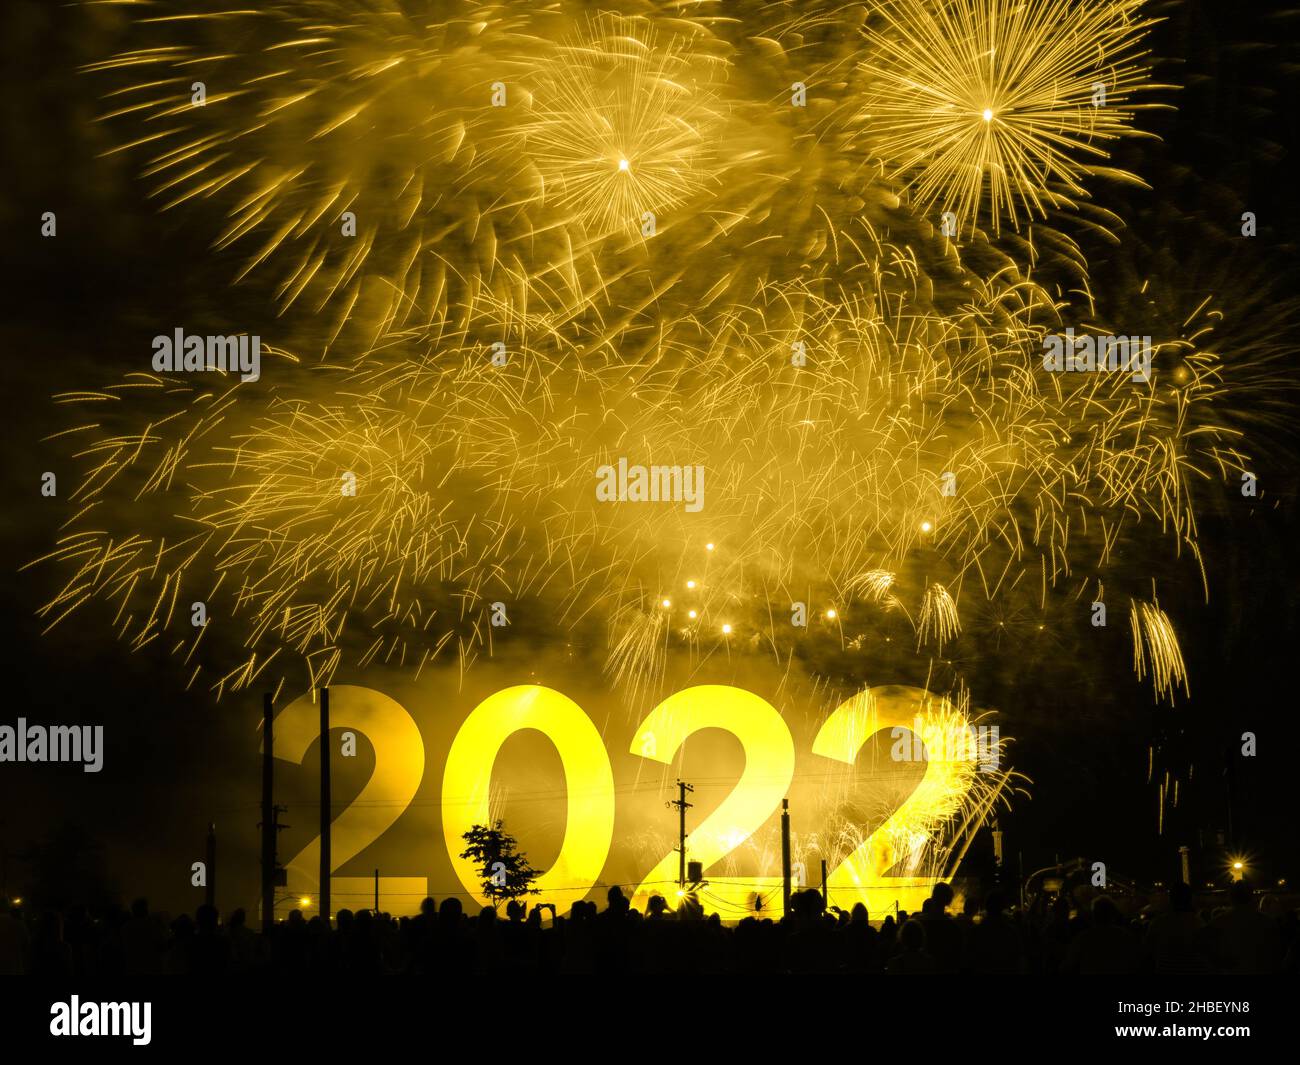 Frohes neues Jahr 2022 Karte auf einem goldenen Feuerwerk Hintergrund Stockfoto